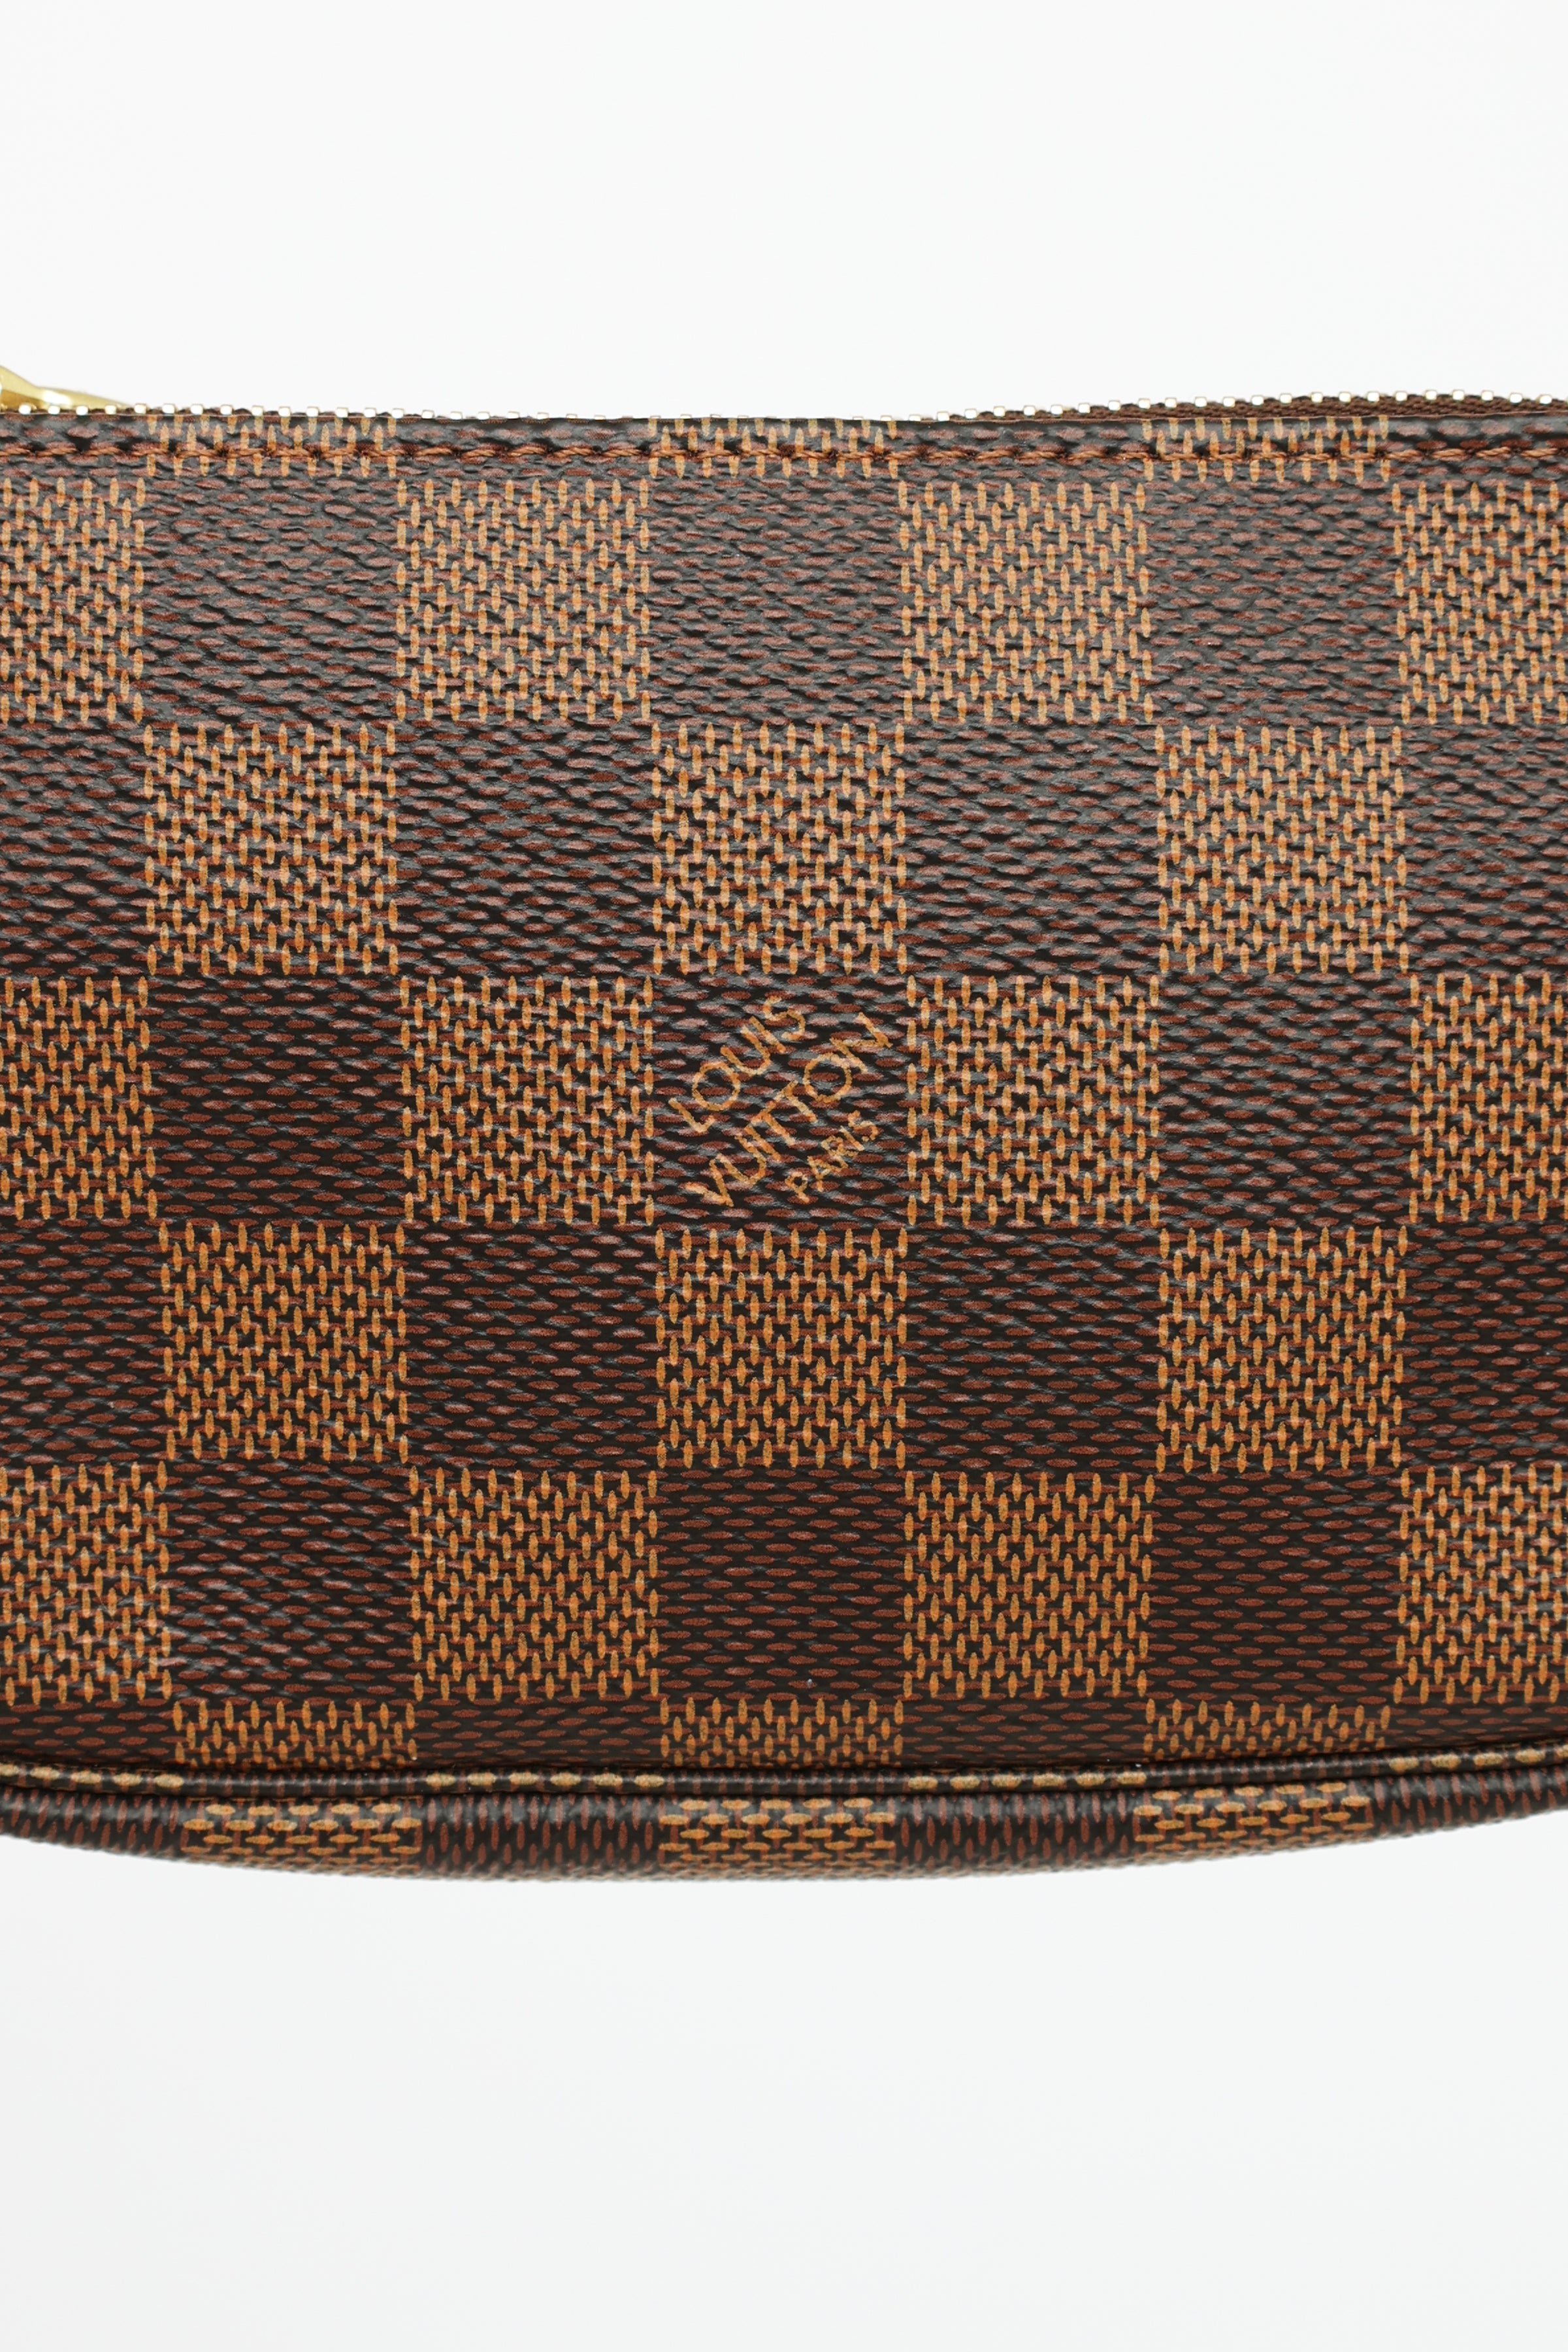 Louis Vuitton Pochette Accessoires Damier Ebene Mini Brown - US